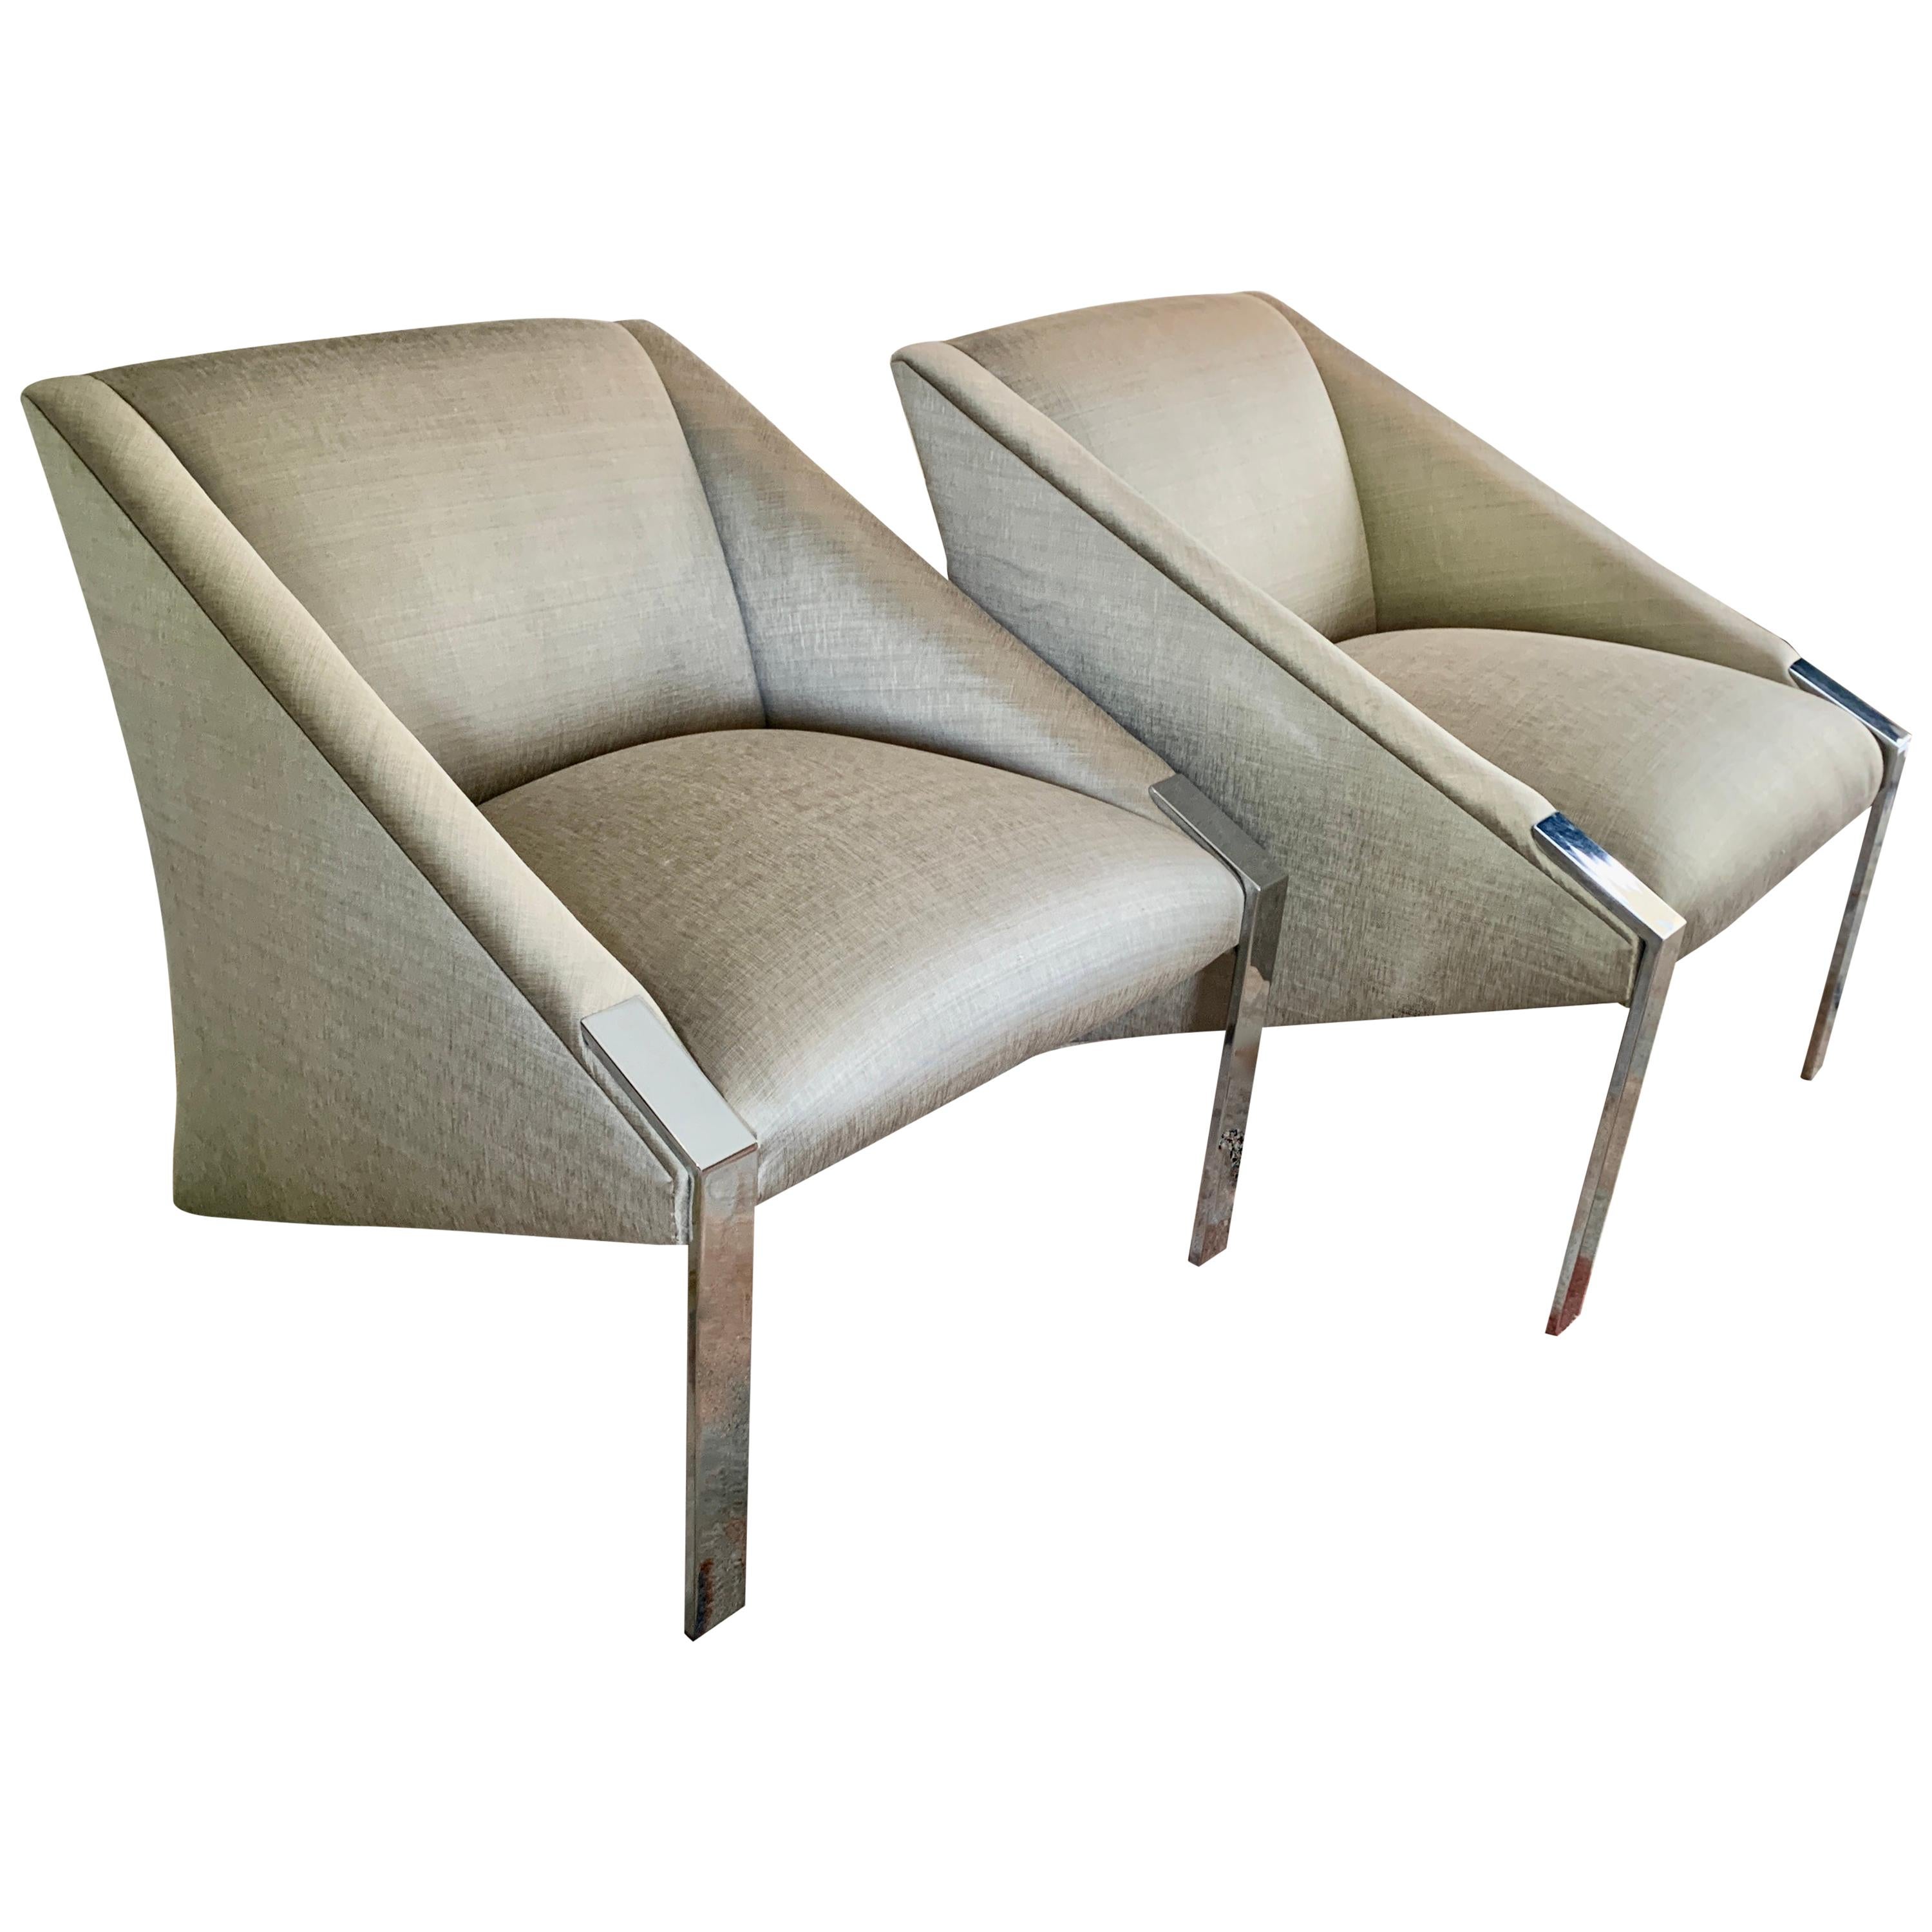 Paar verchromte Beistell-/Lounge-Stühle von Andree Putman. 

Das Paar ruht auf hohen, polierten Chrombeinen, die schräg nach hinten auf den Boden zulaufen. Sie sind mit einem sehr schicken silberfarbenen gewebten Seidenstoff neu bezogen - wunderbar